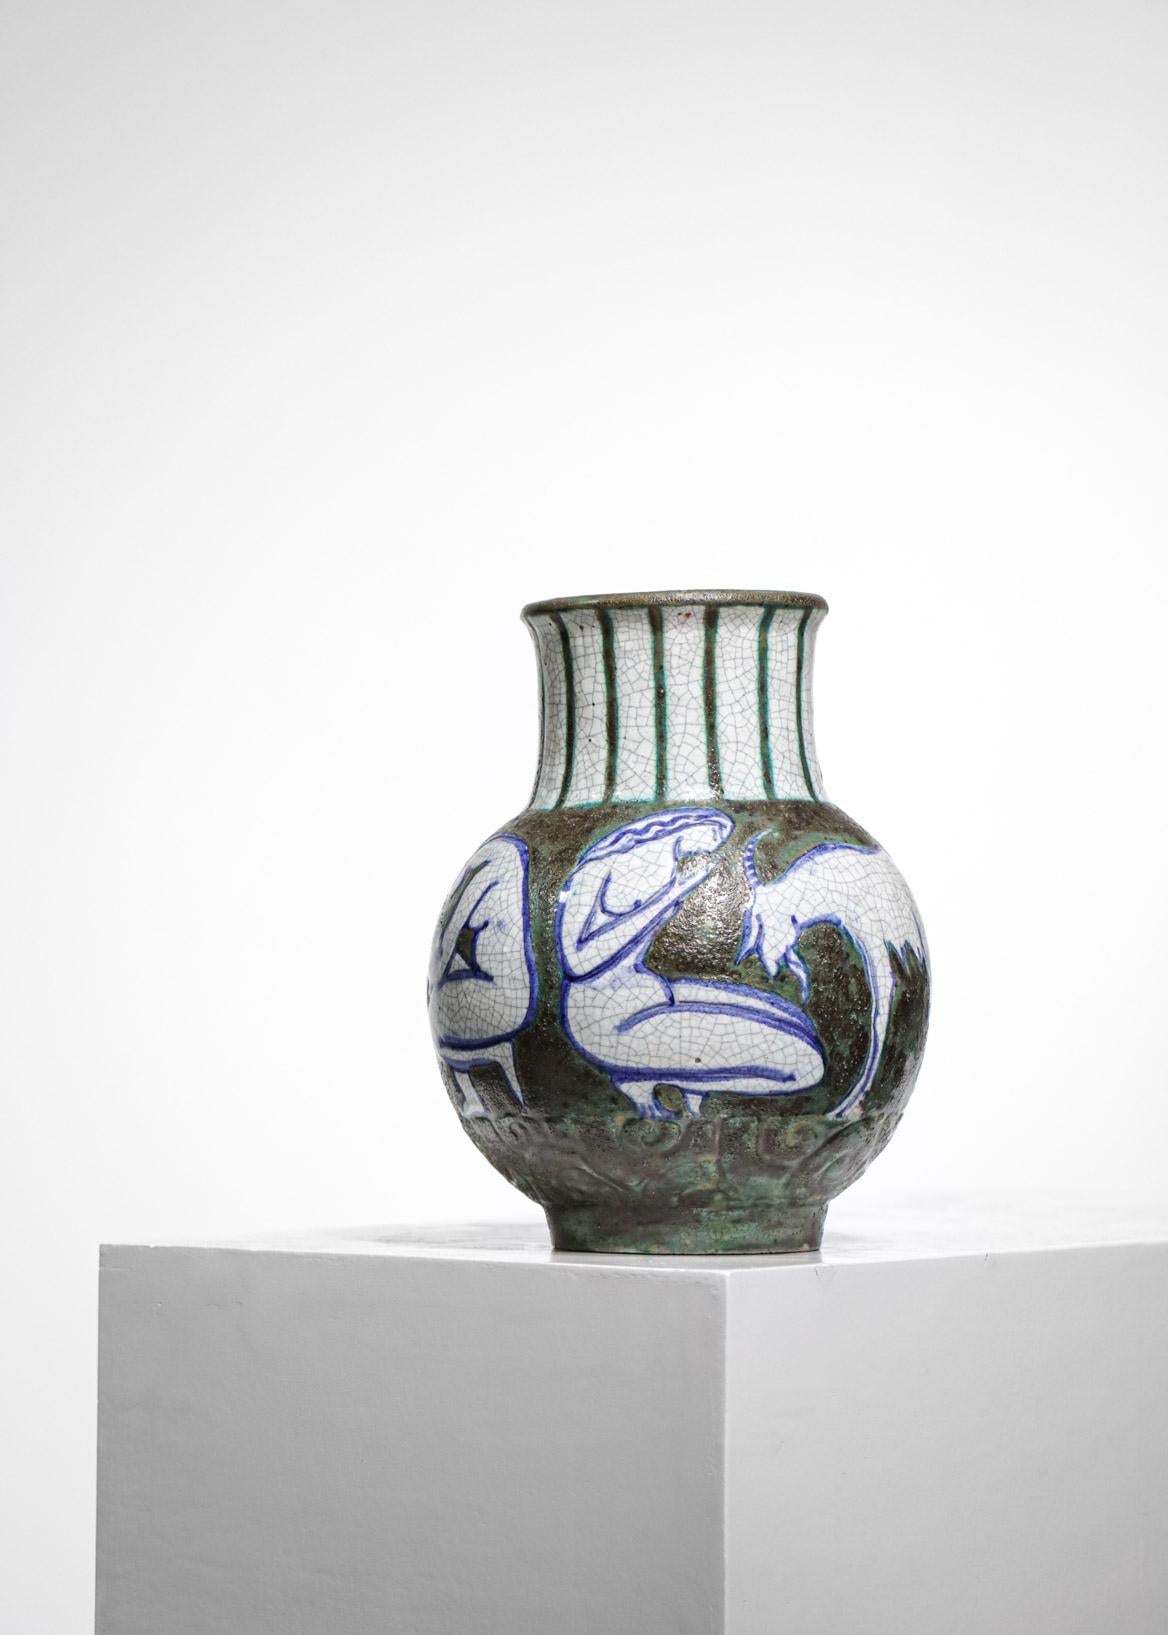 Vase en céramique des années 1950 du céramiste français Edouard Cazaux. Très beaux dessins de l'artiste de femmes et de chèvres tout autour du vase qui créent une impression de mouvement, émaillage dans des tons de vert, blanc et bleu. Très bon